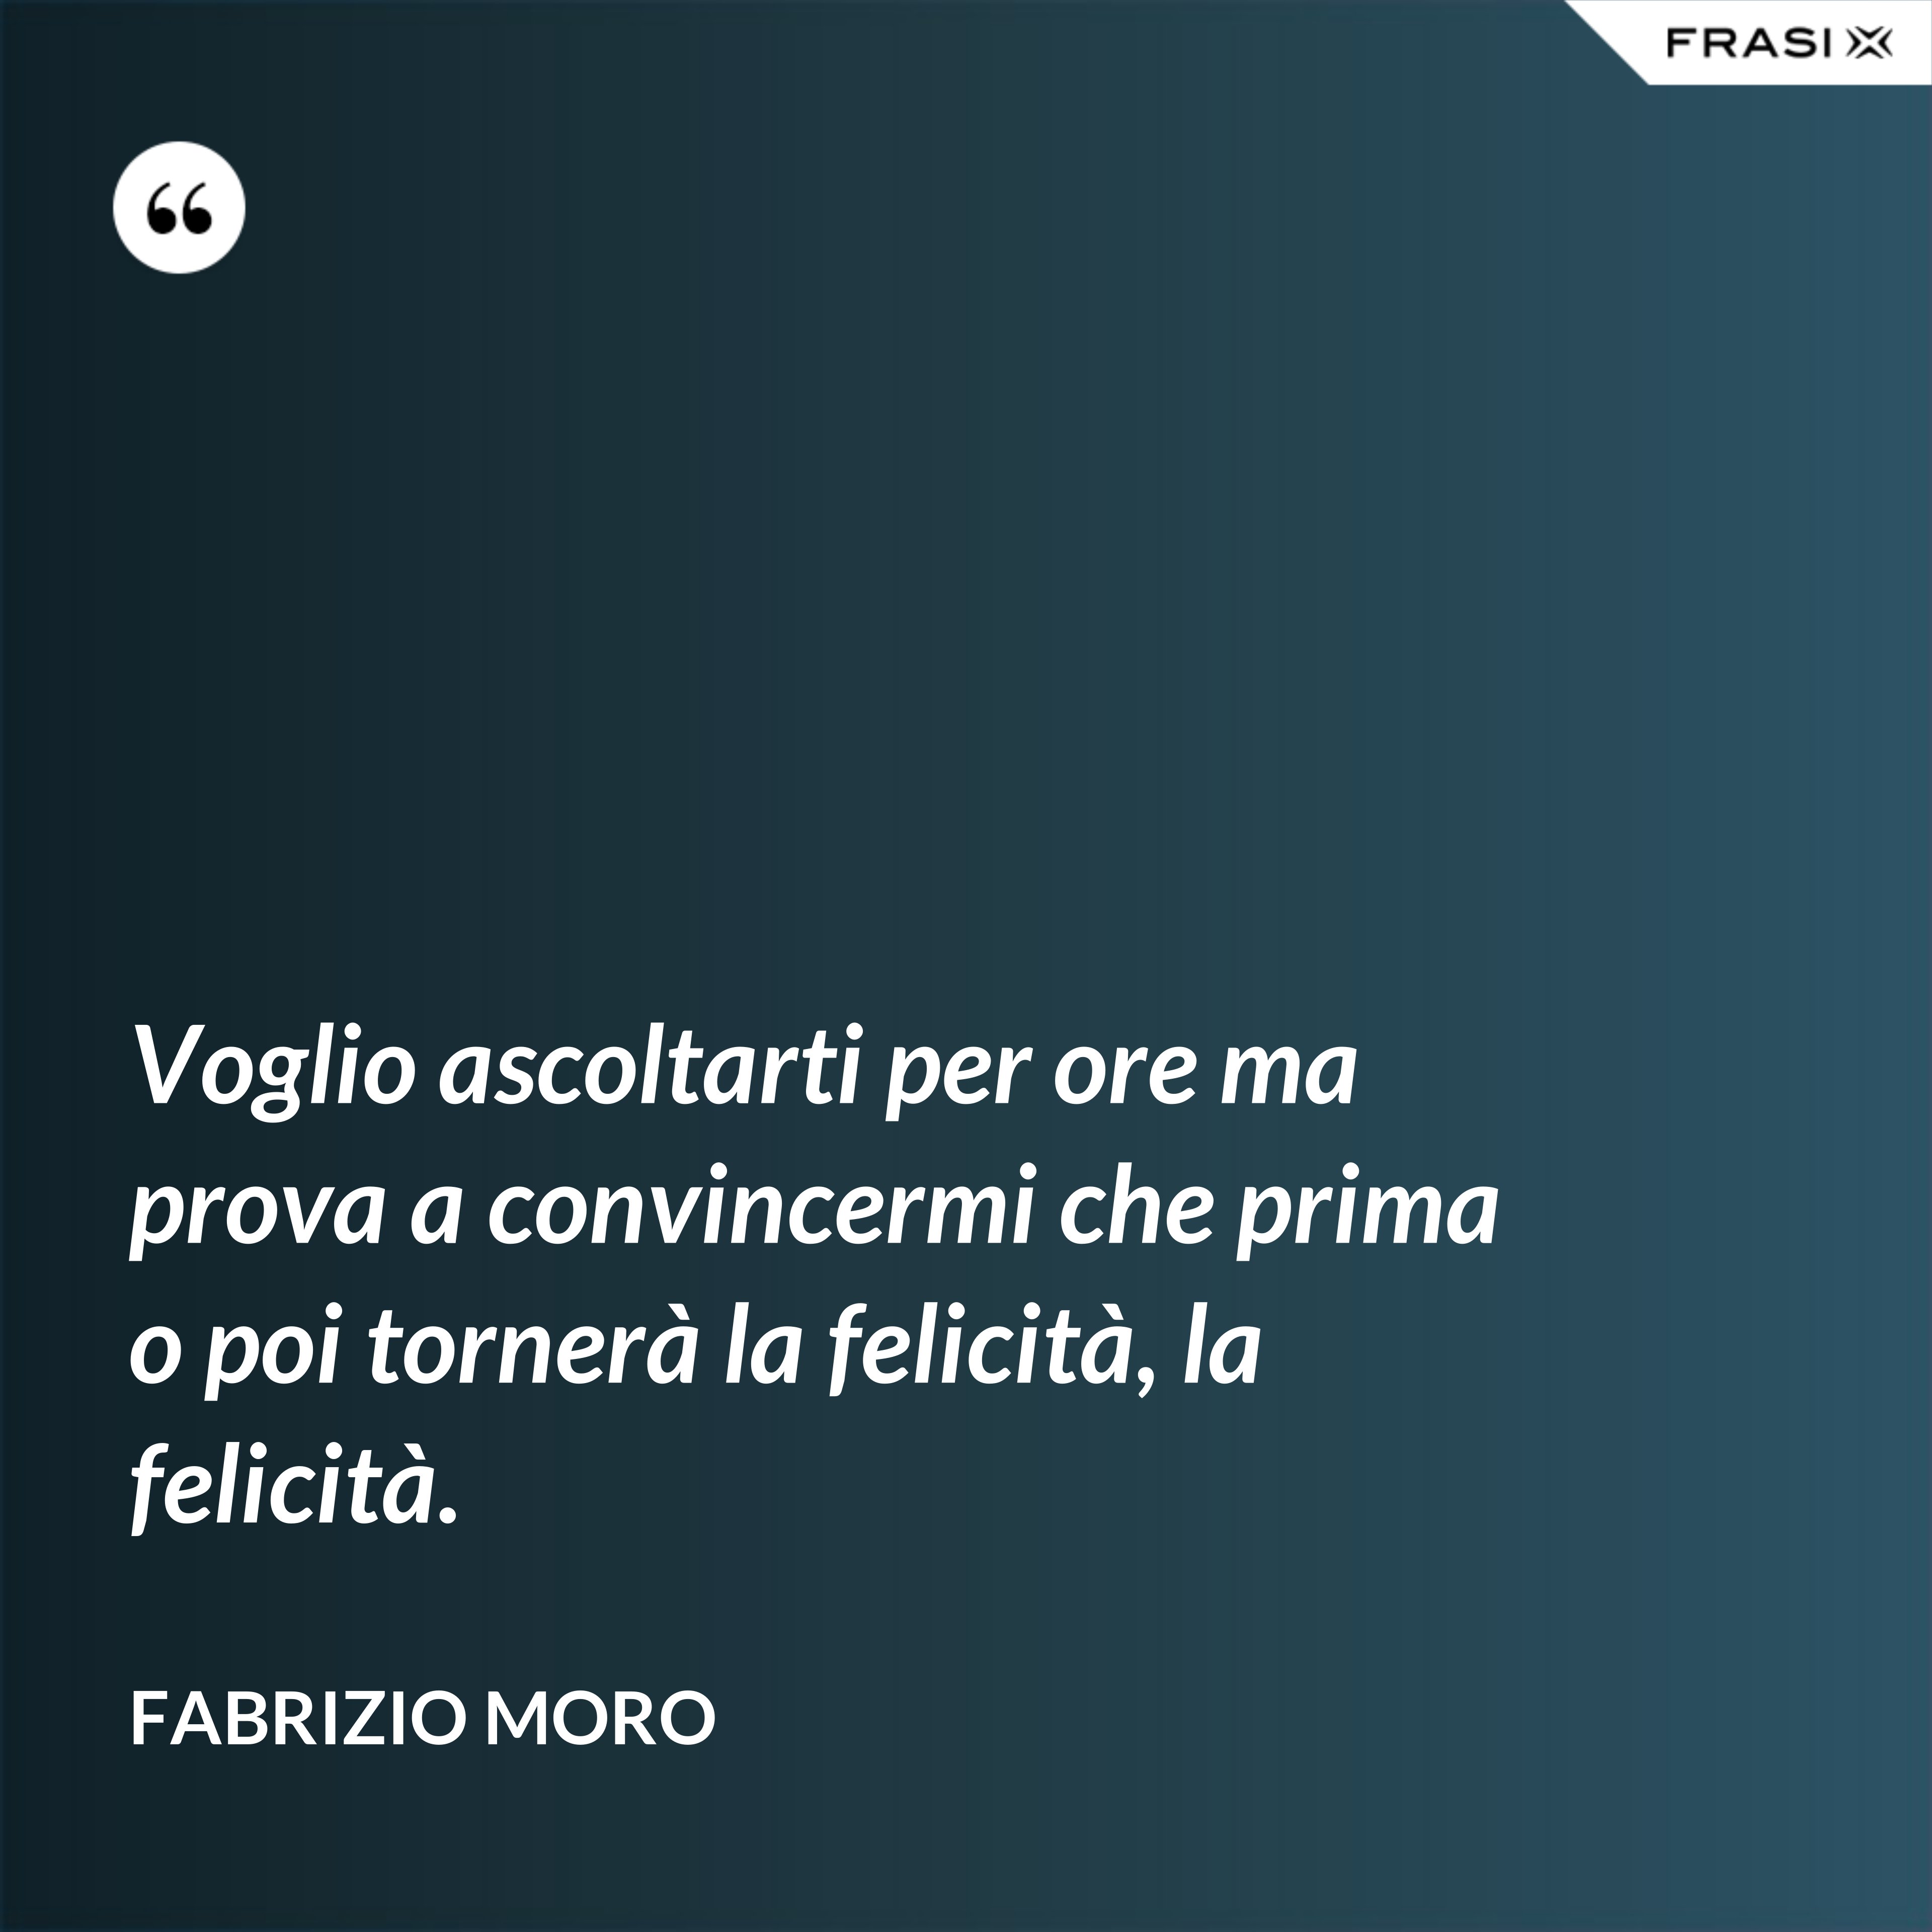 Voglio ascoltarti per ore ma prova a convincermi che prima o poi tornerà la felicità, la felicità. - Fabrizio Moro